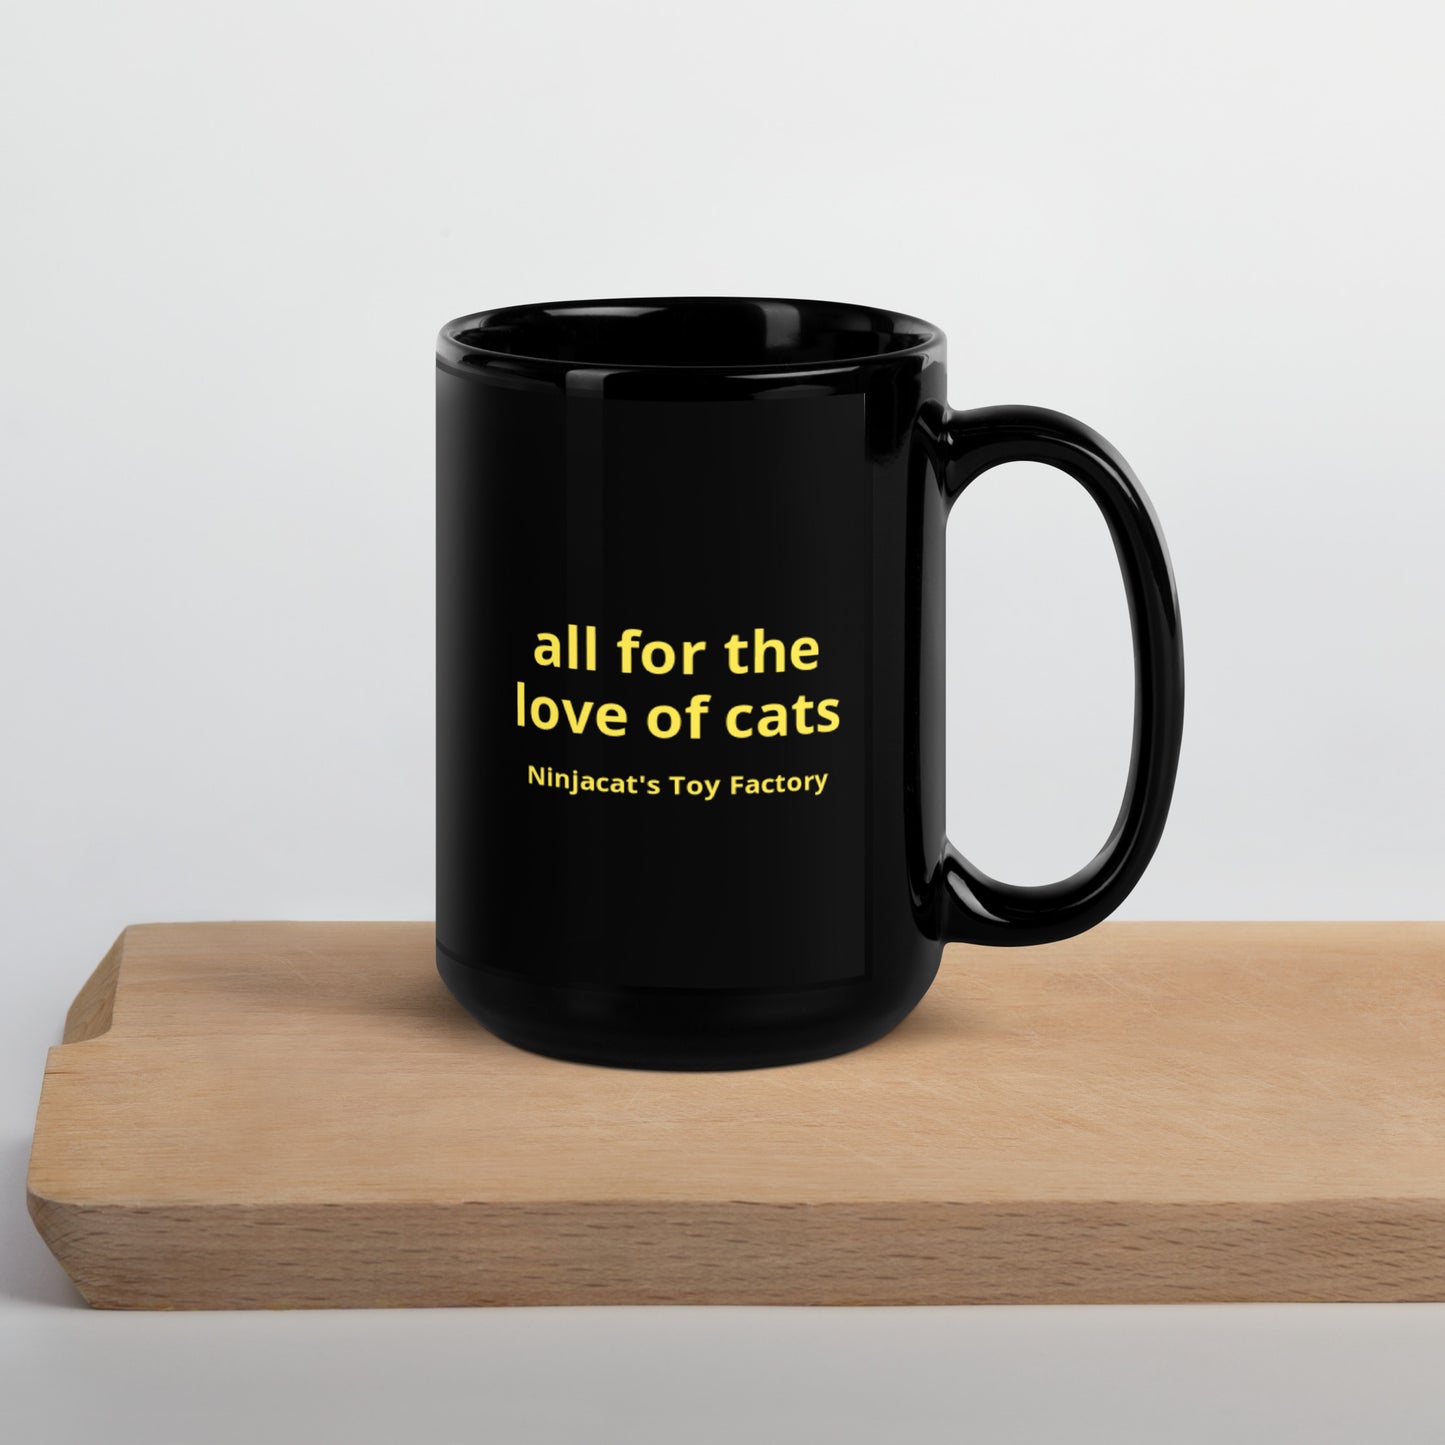 Cats Rule Mug